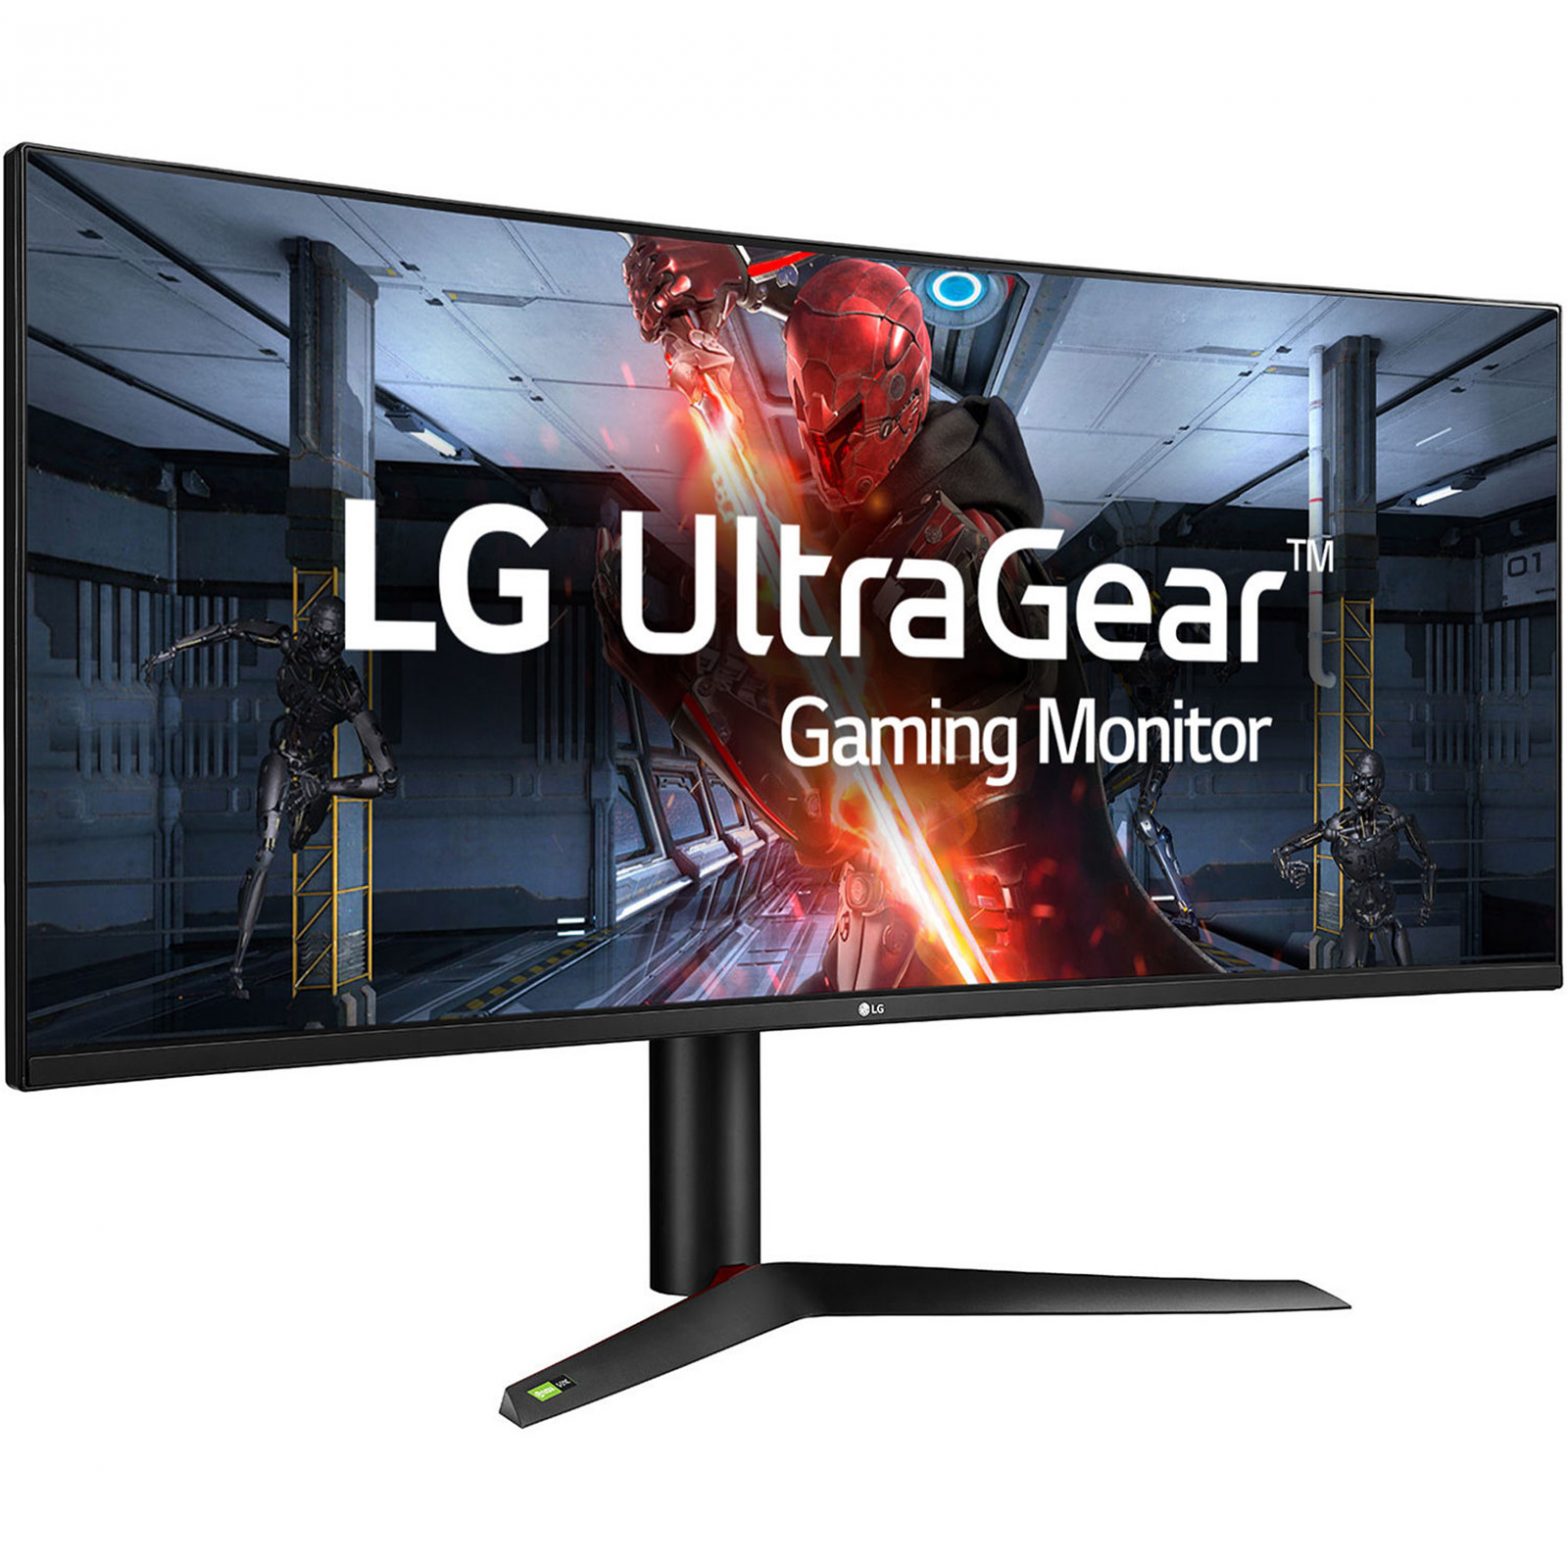 LG UltraGear Gaming Monitor (LED Monitor) OWNER’S MANUAL